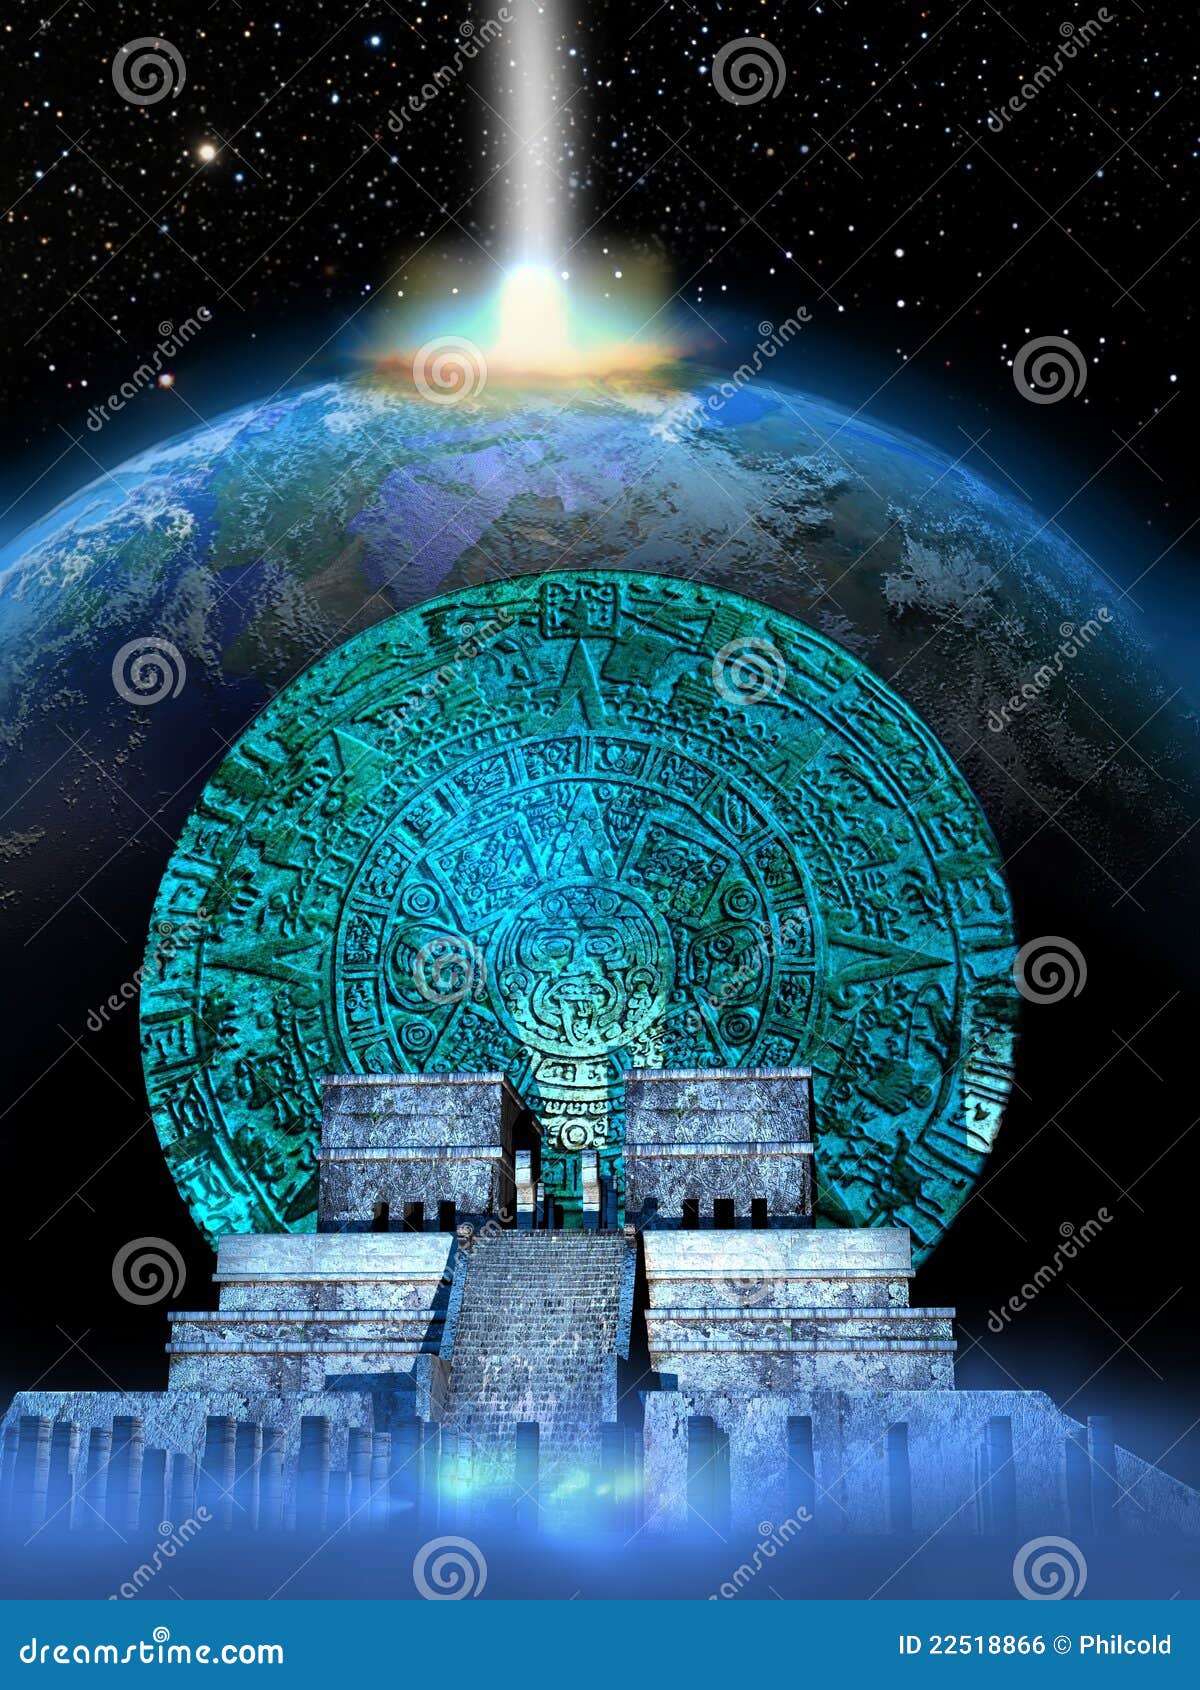 Mayan Predictions Royalty Free Stock Image Image 22518866